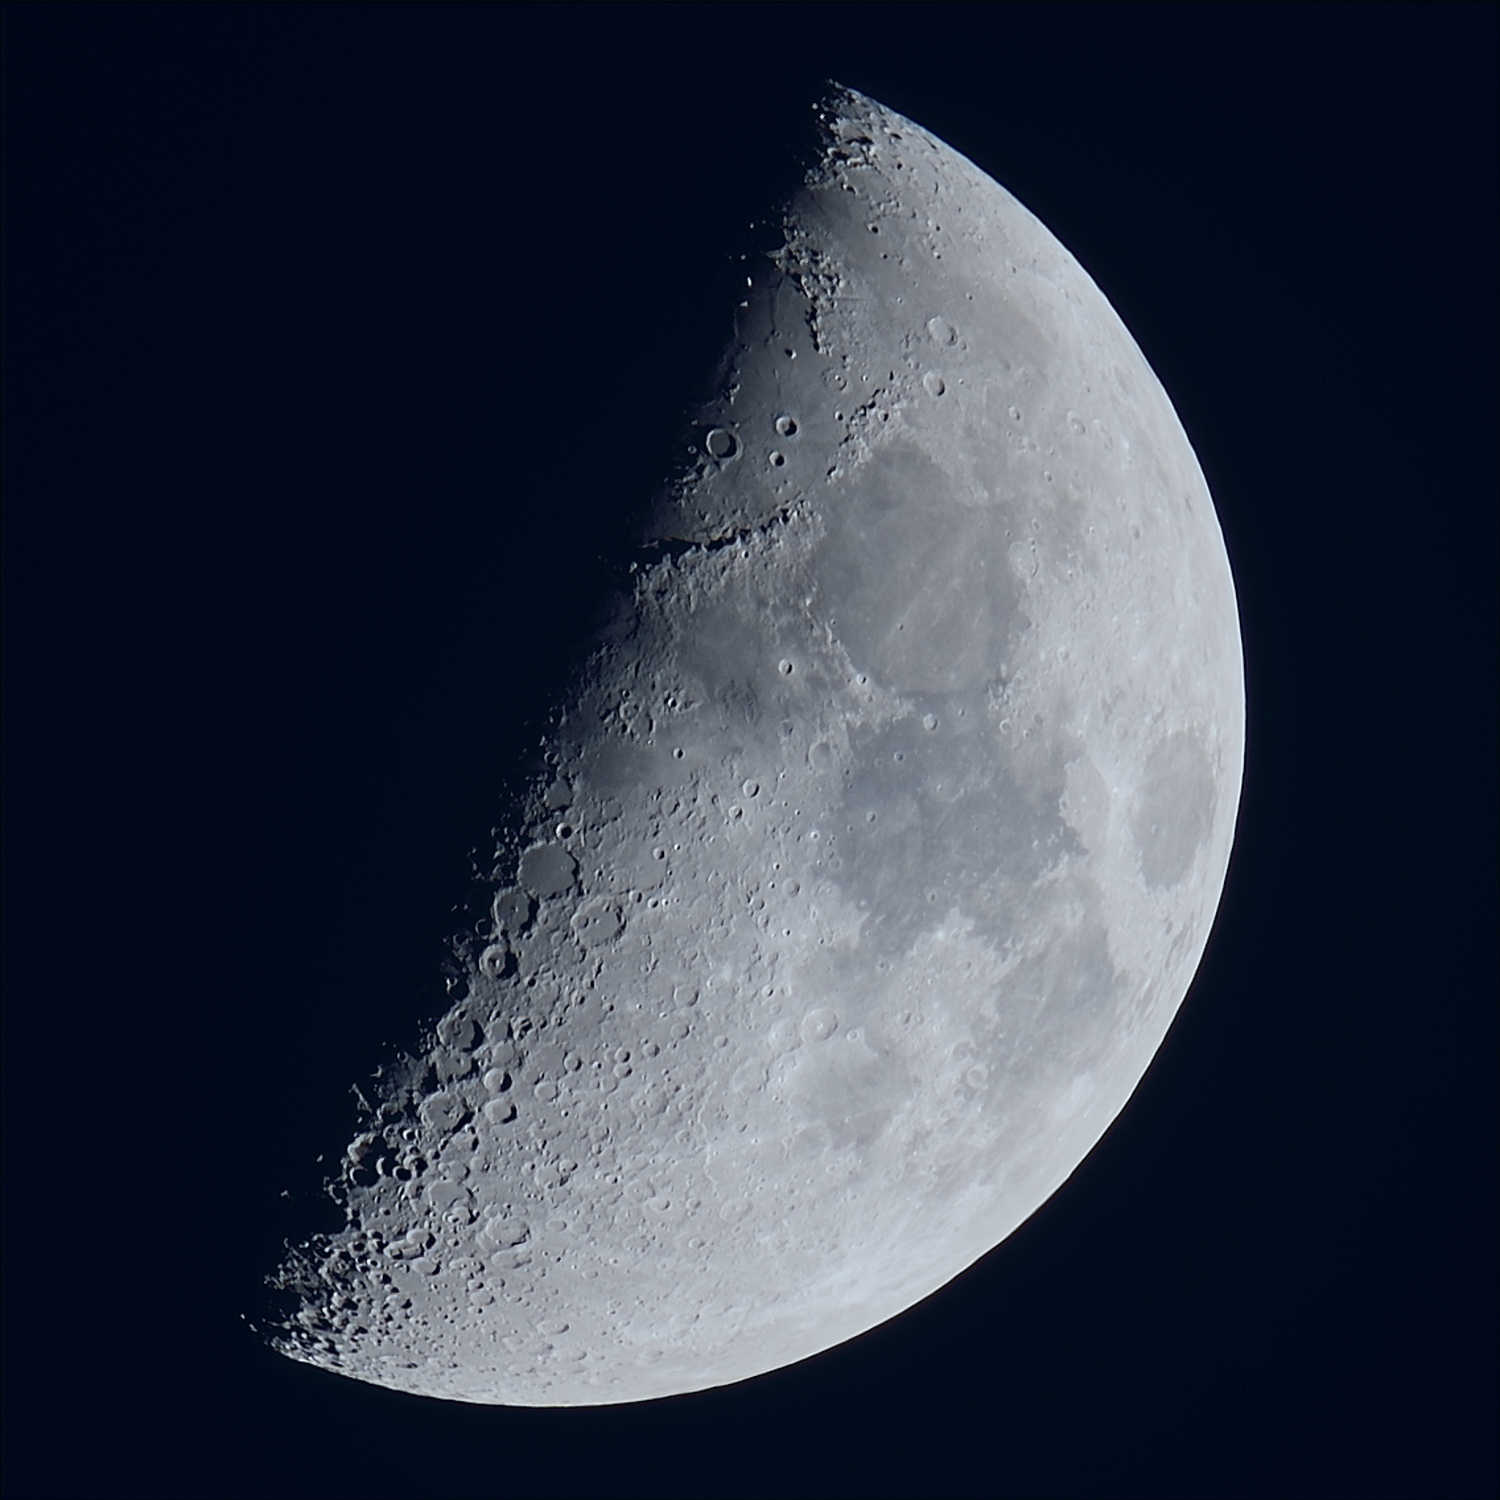 La lune du 26 Novembre, au zoom Sigma 120/300 et D810, à 600mm de focale - Lune - Astrosurf